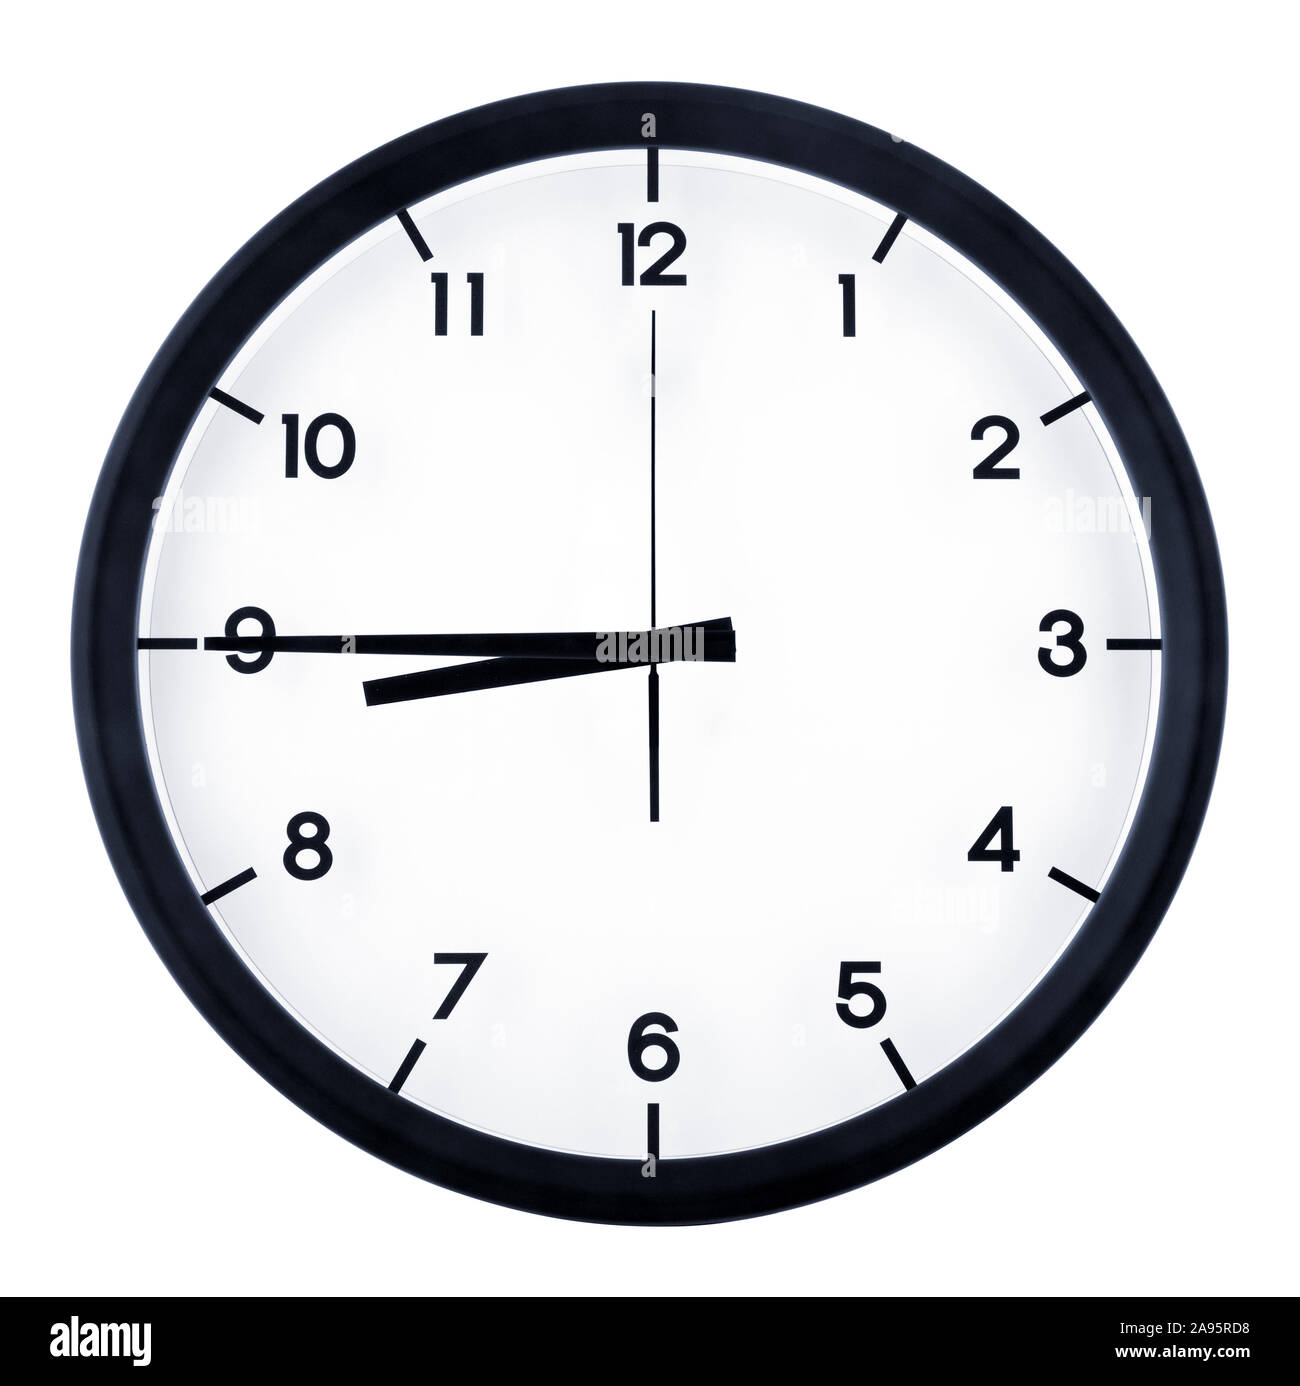 Klassische analoge Uhr auf acht 45 o'clock, auf weißem Hintergrund  Stockfotografie - Alamy